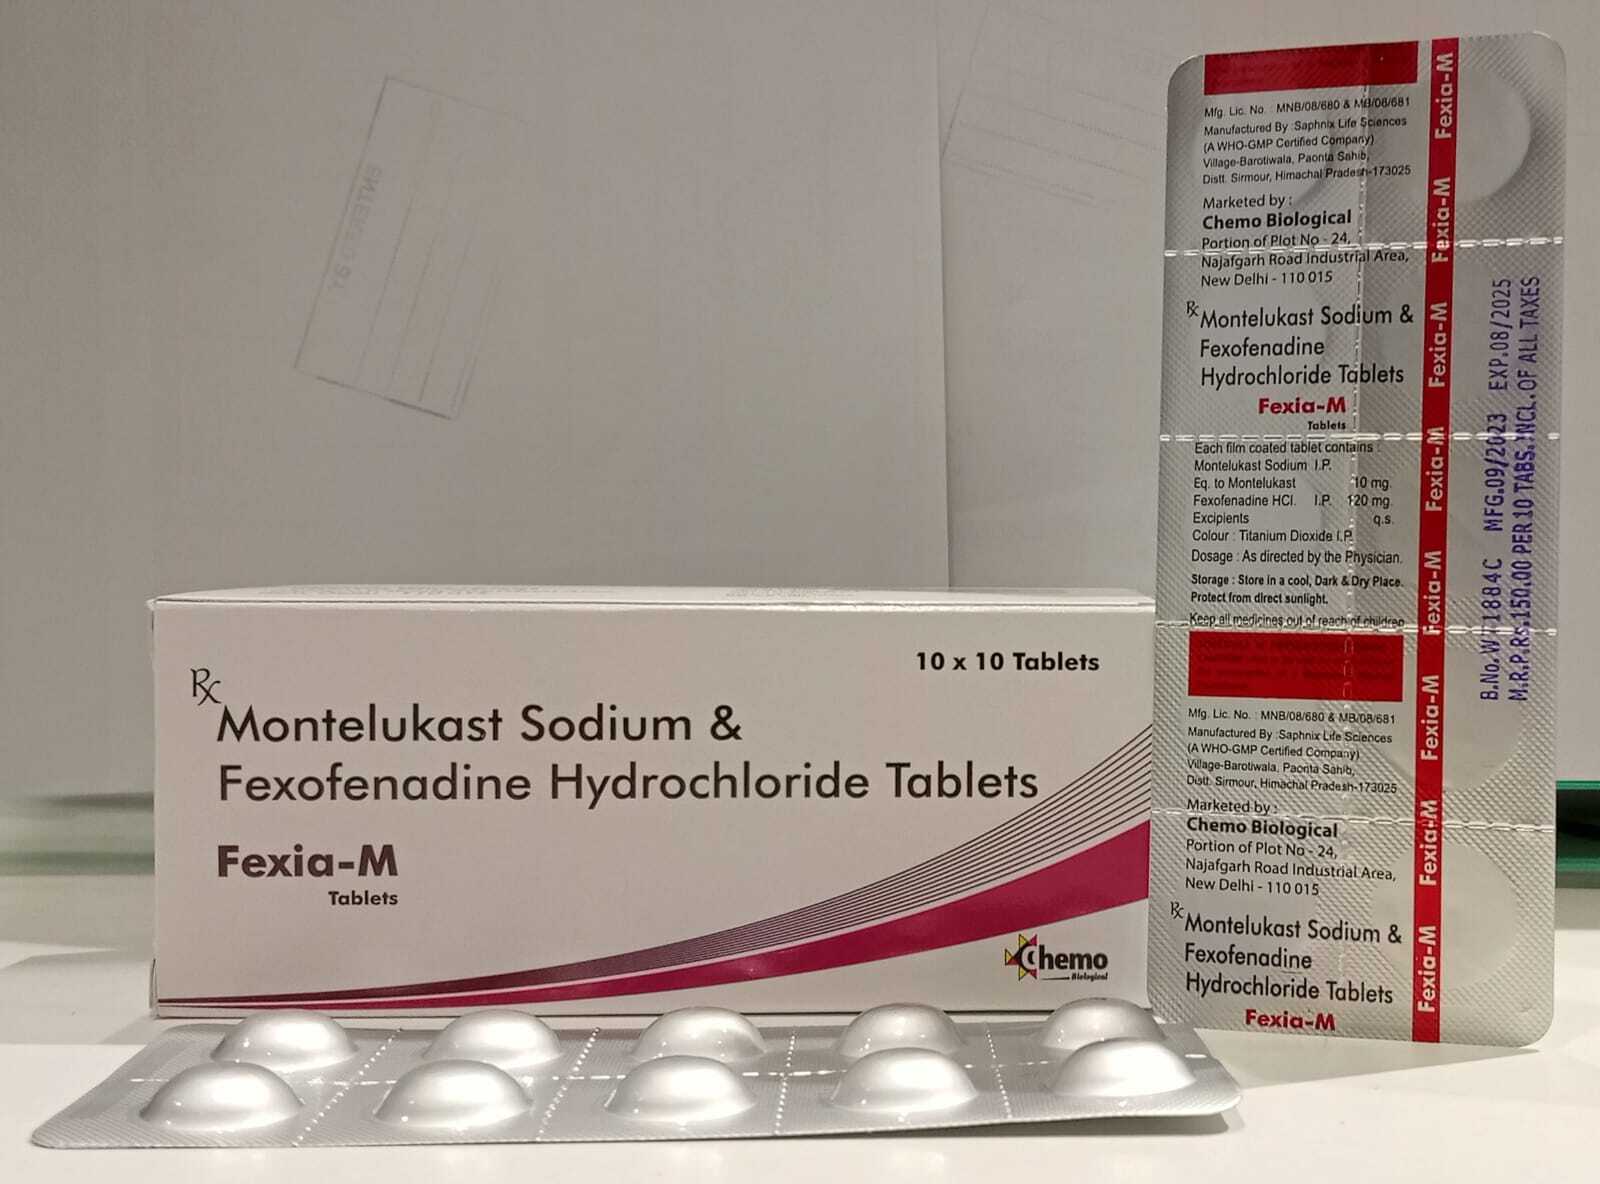 Fexofenadine 120 mg + Montelukast 10 mg